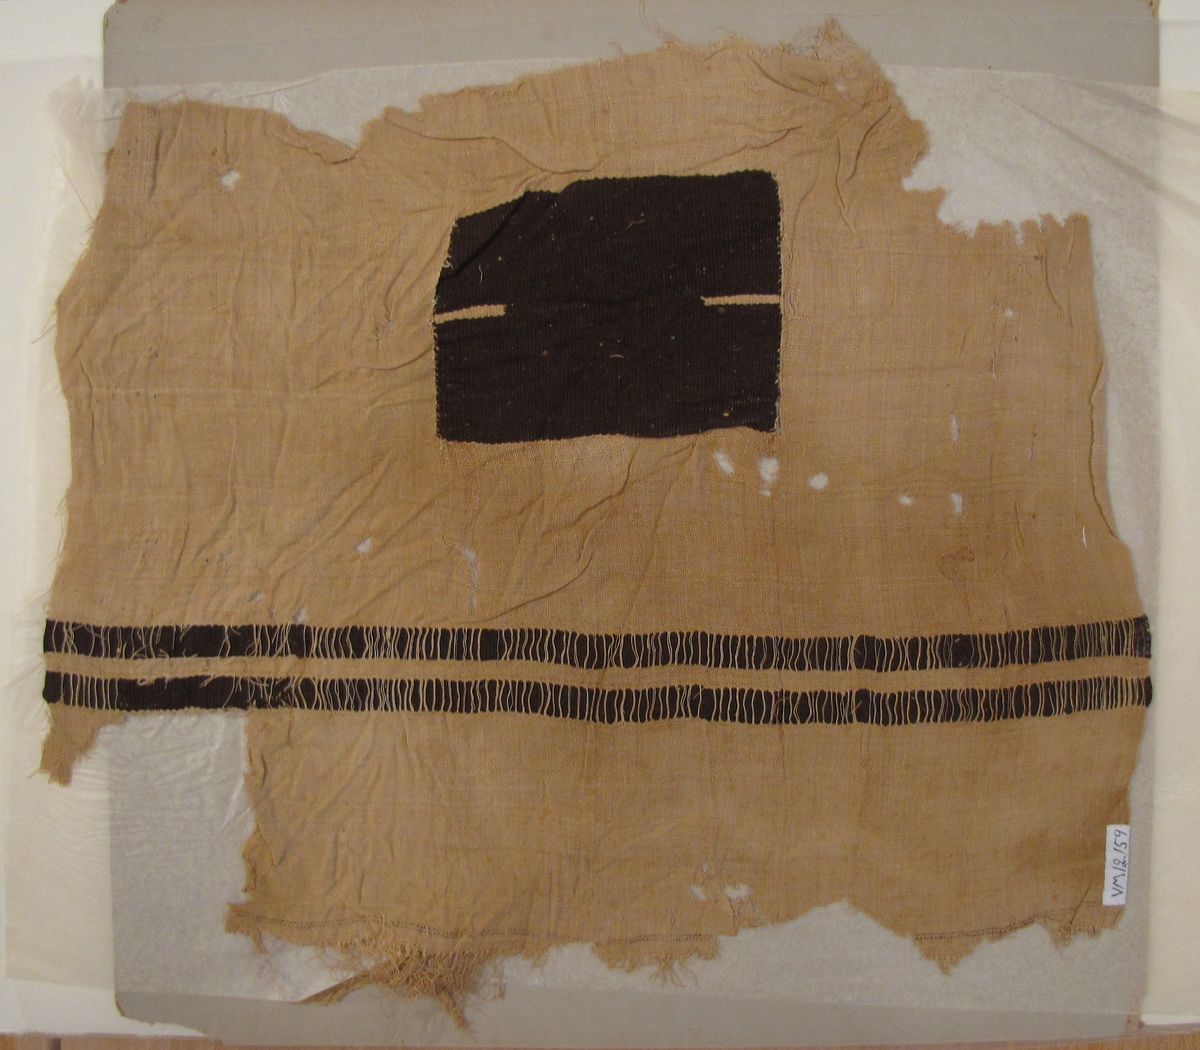 Fotkläde II
 
Nr 12 155 - 12 159 tillhör den egyptiska sarkofagern ''mumien''. 

2014-05-23 Enligt forskare Maciej Szymaszek är detta troligen ett fragment av en mantel från södra Egypten. Troligen tillhör detta fragment tillsammans med VM 1392, VM 1 393 och VM 12 159 samma mantel.

Ej tidigare inmärkta.